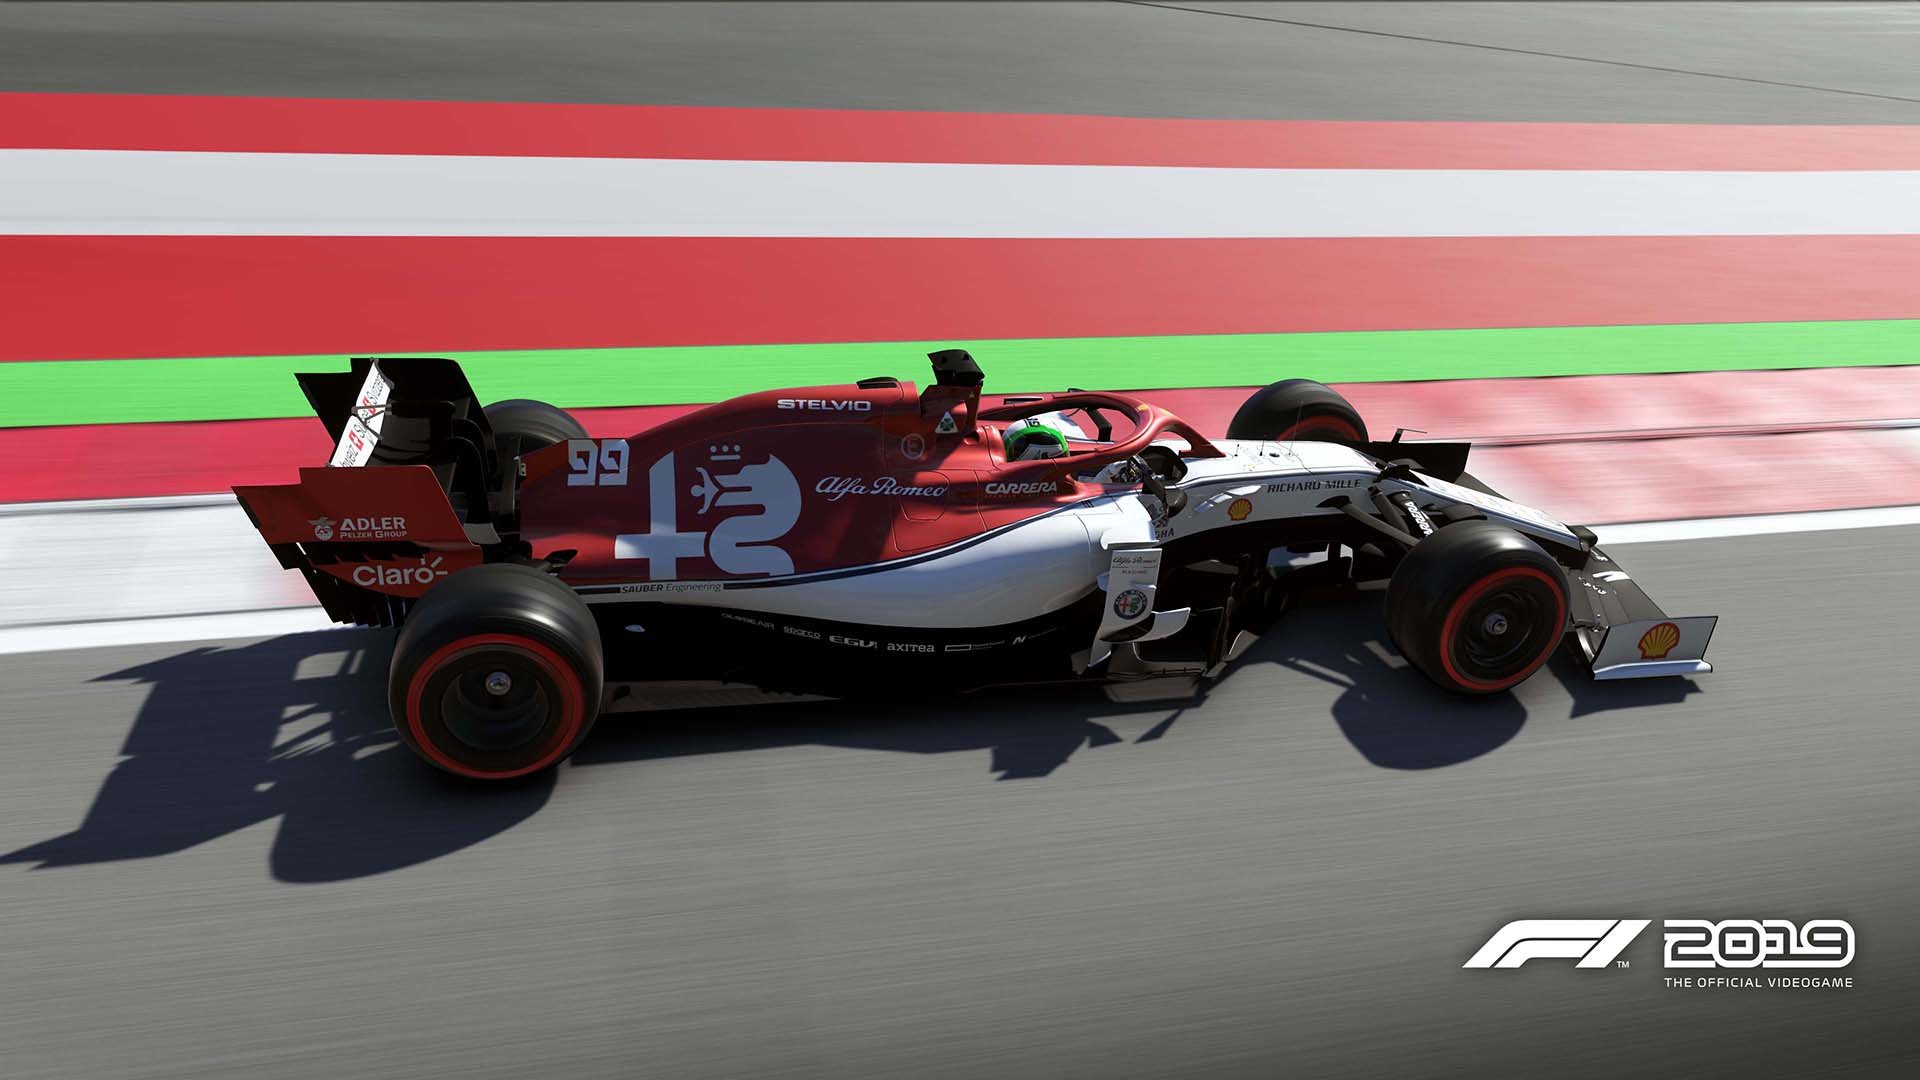 More information about "Codemasters aggiorna F1 2019 alla versione 1.05"